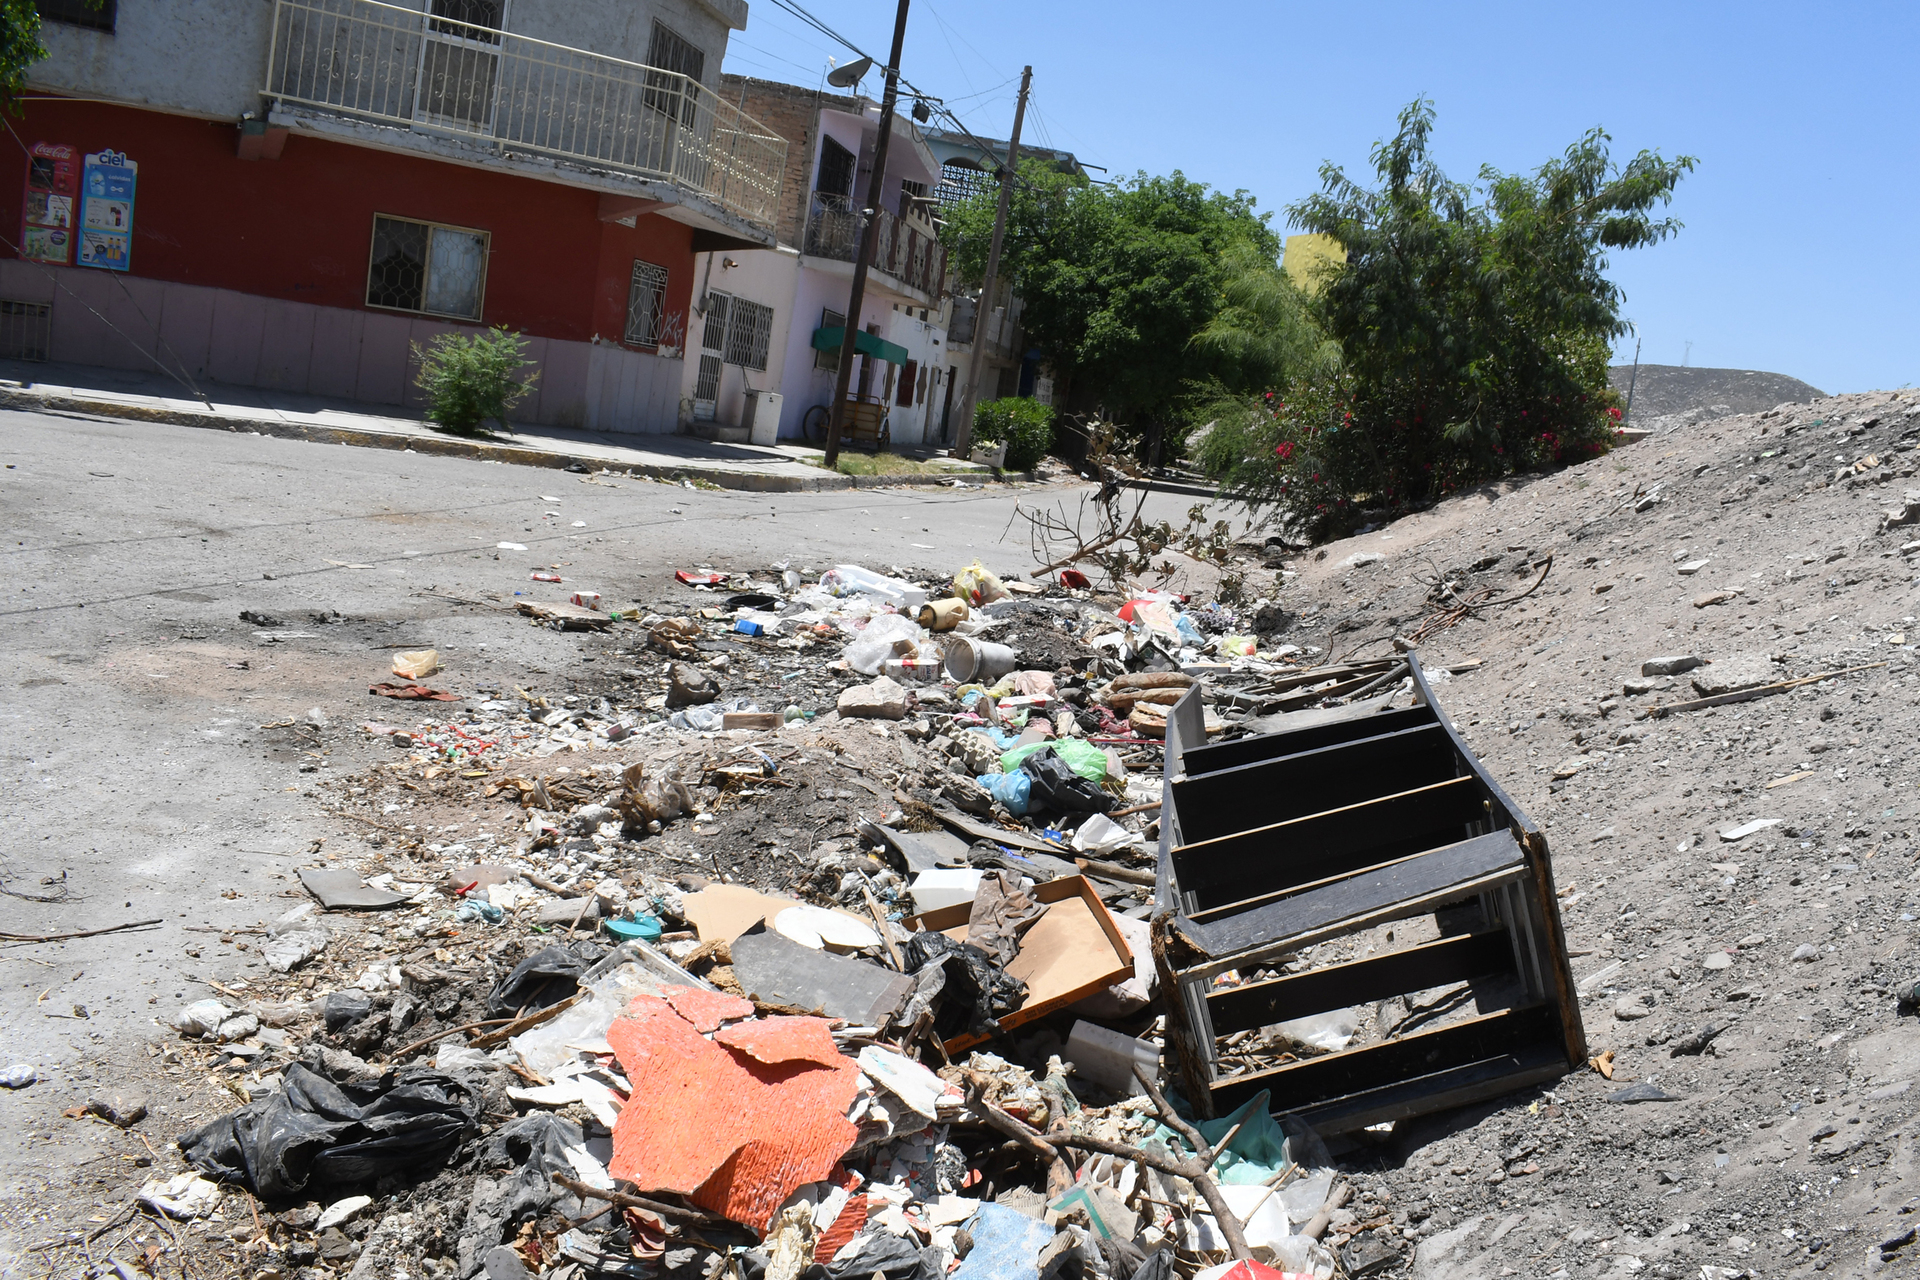 Reportan de 50 a 80 'vecinos cochinos' por día en Torreón, la mitad captados infraganti